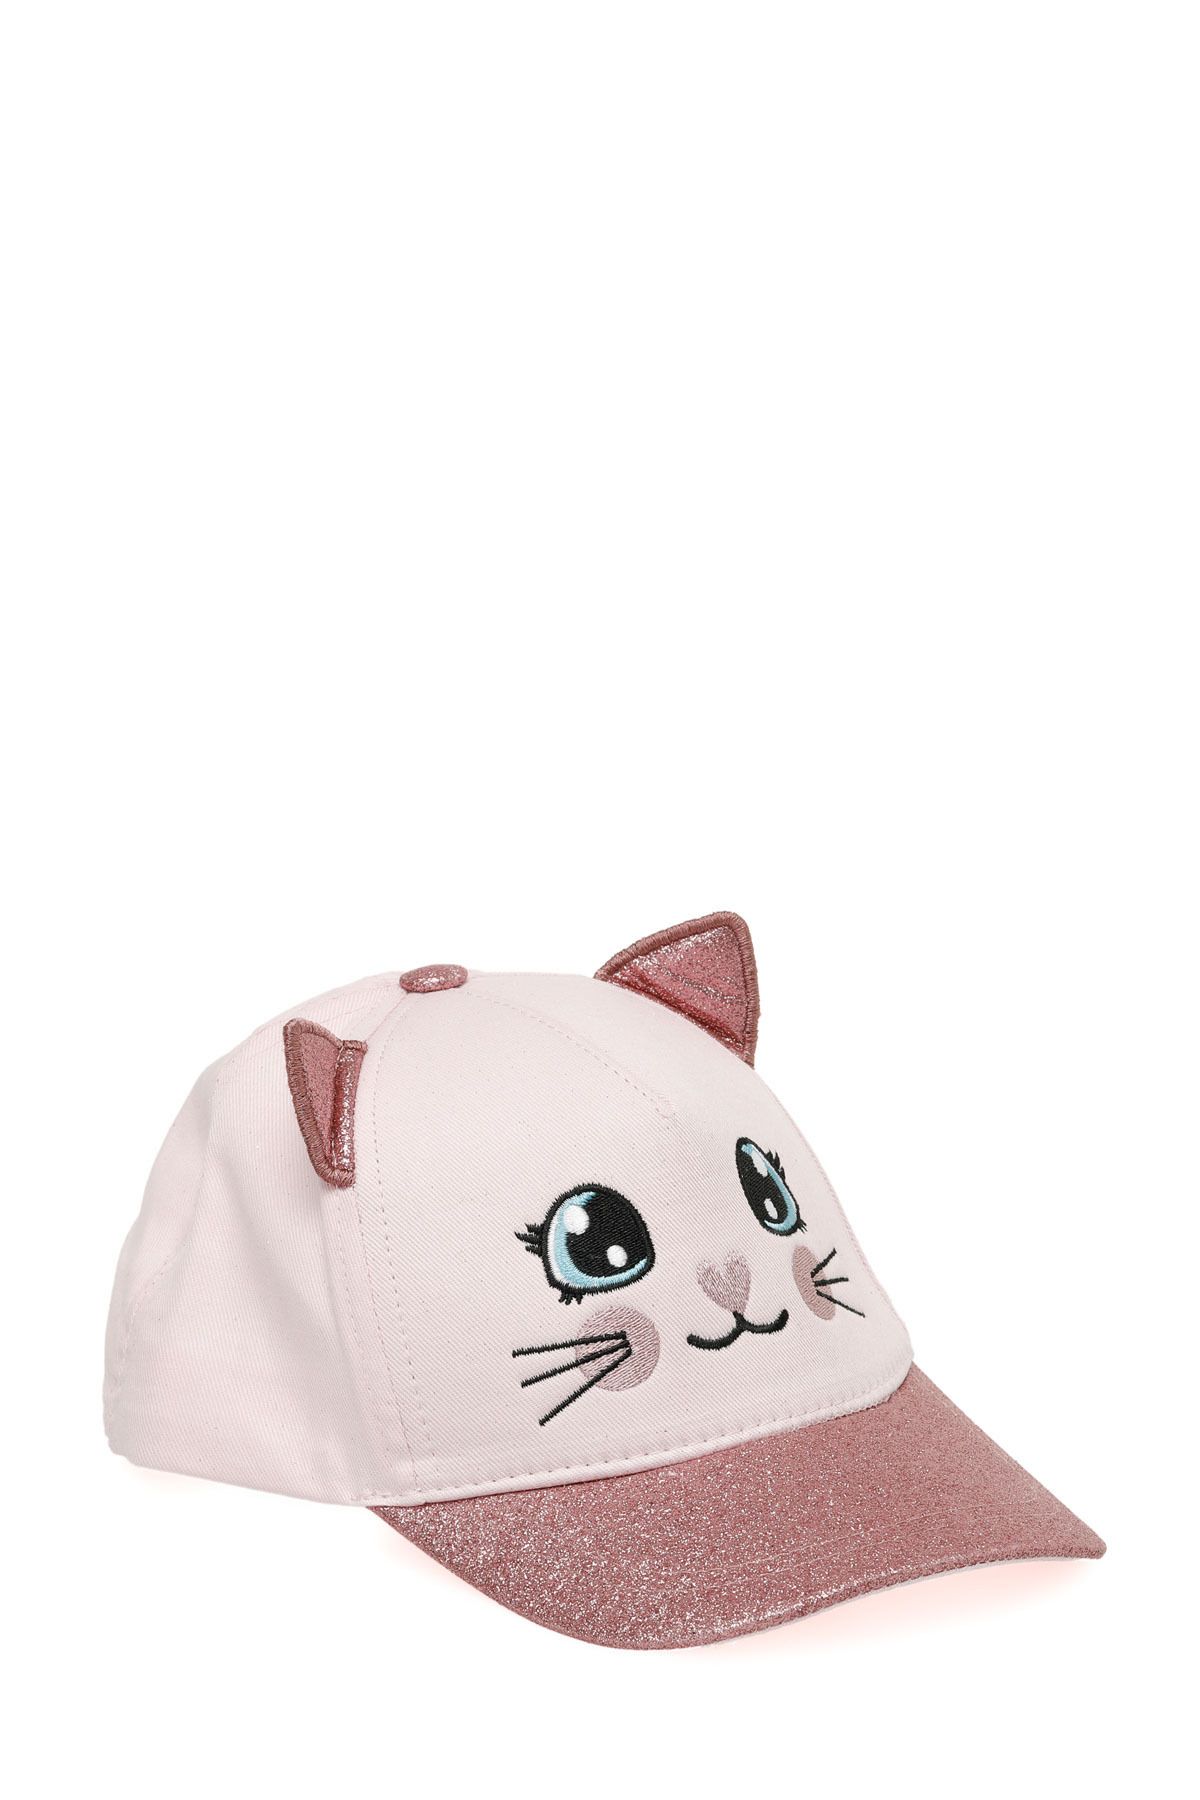 Polaris CAT CAP-G 4FX Pembe Kız Çocuk Şapka